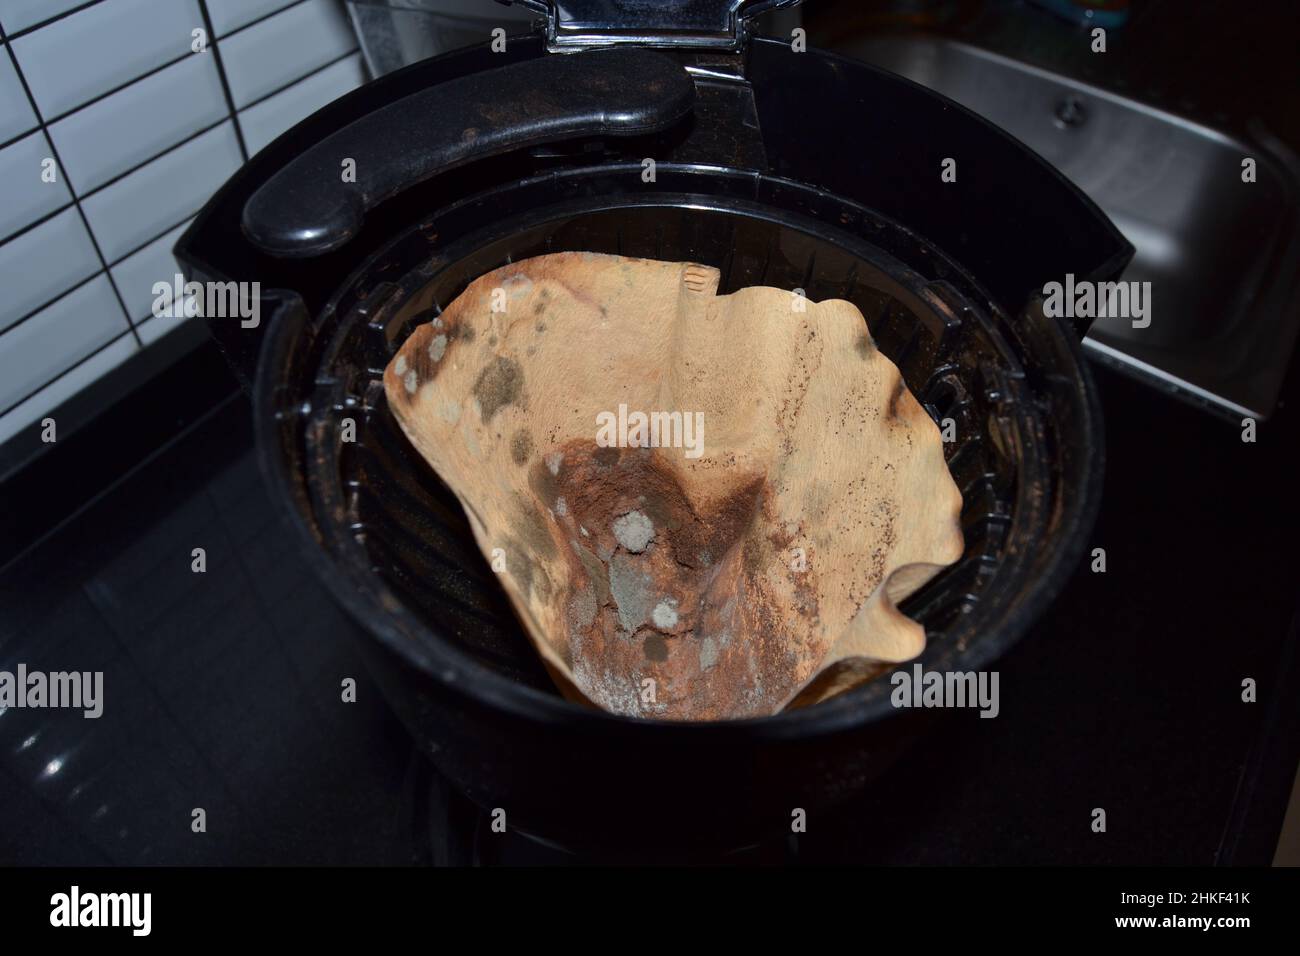 Schimmeliges Kaffeepapier - Pilz auf altem Kaffeefilter Stockfoto